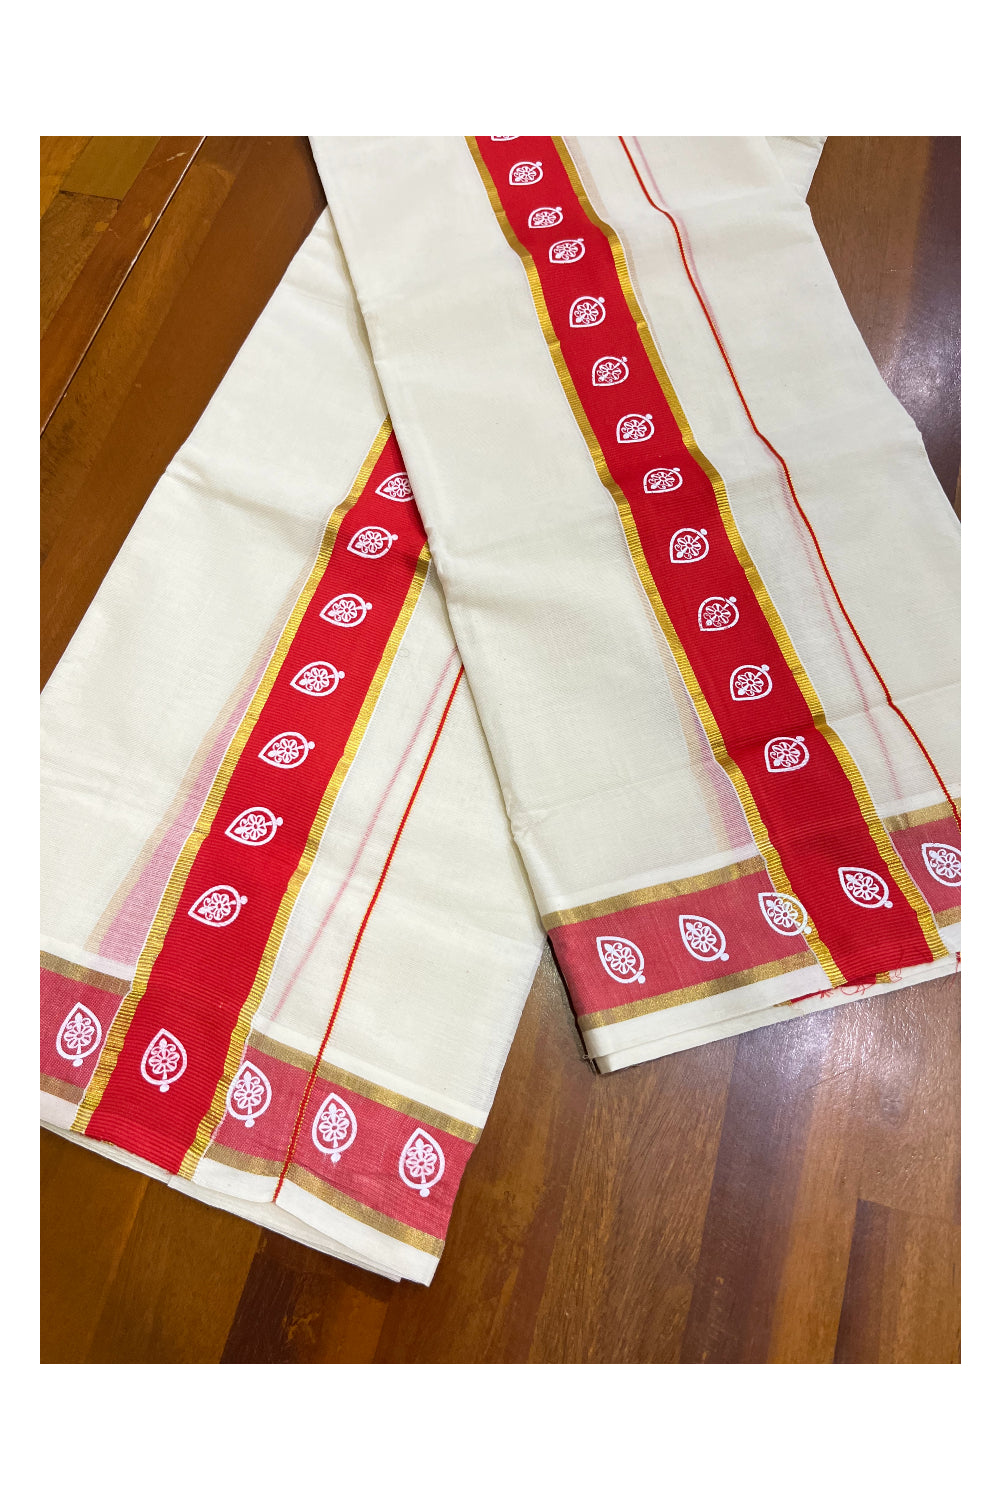 Kerala Cotton Single Set Mundu (Mundum Neriyathum) with Block Prints on Red and Kasavu Border - 2.60Mtrs